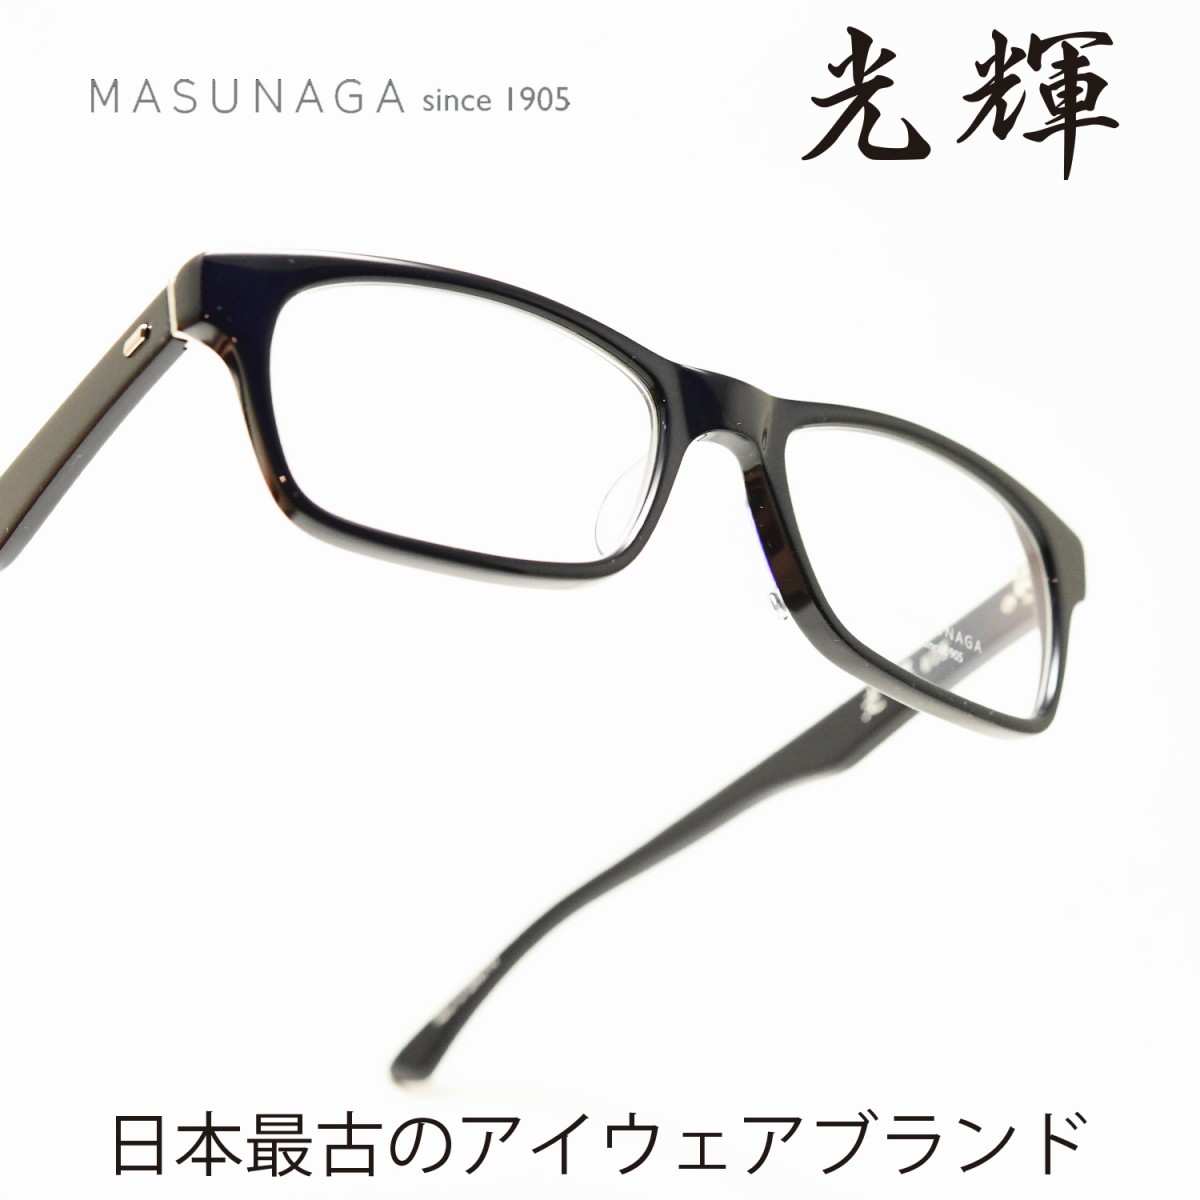 増永眼鏡 MASUNAGA 光輝 075 col-35 NAVY - メガネナカジマ Style N 